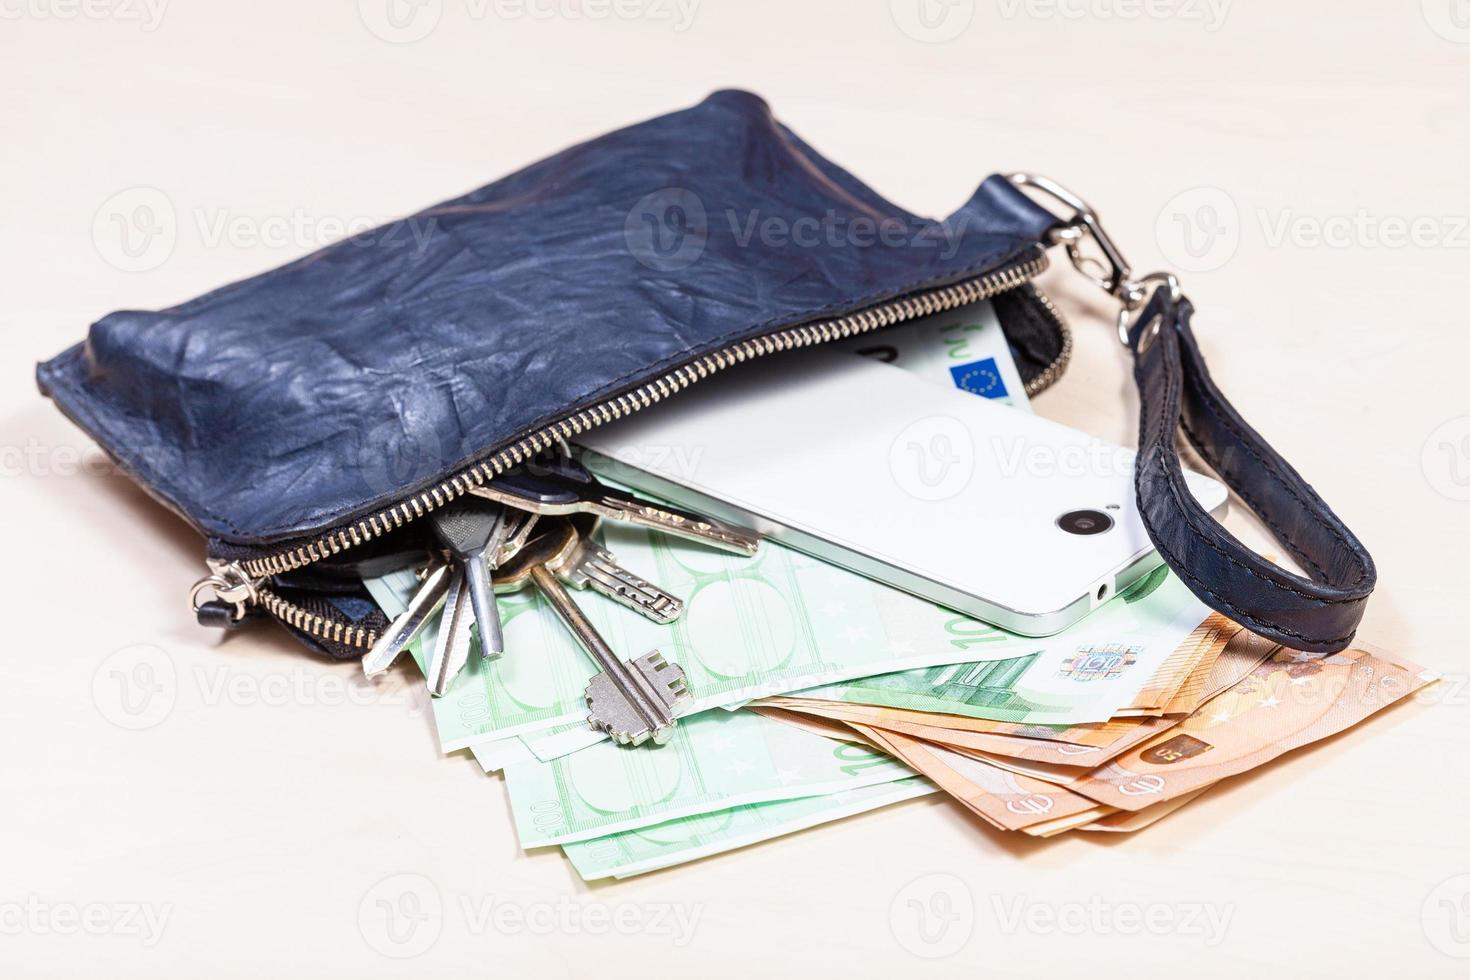 bolsa com telefone, chaves e muitos euros na mesa foto